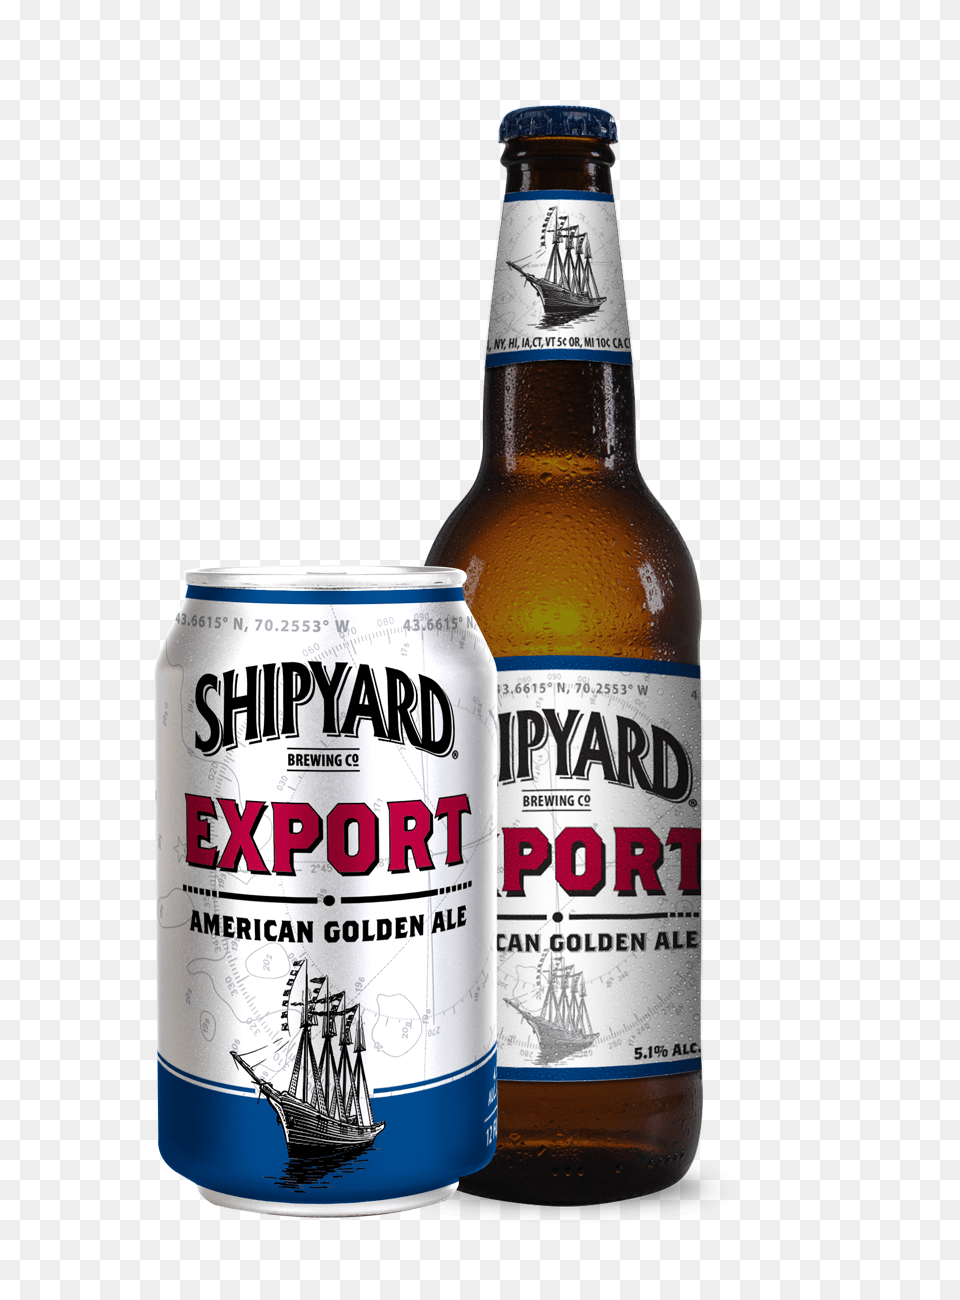 Shipyard, Alcohol, Beer, Beverage, Lager Free Transparent Png